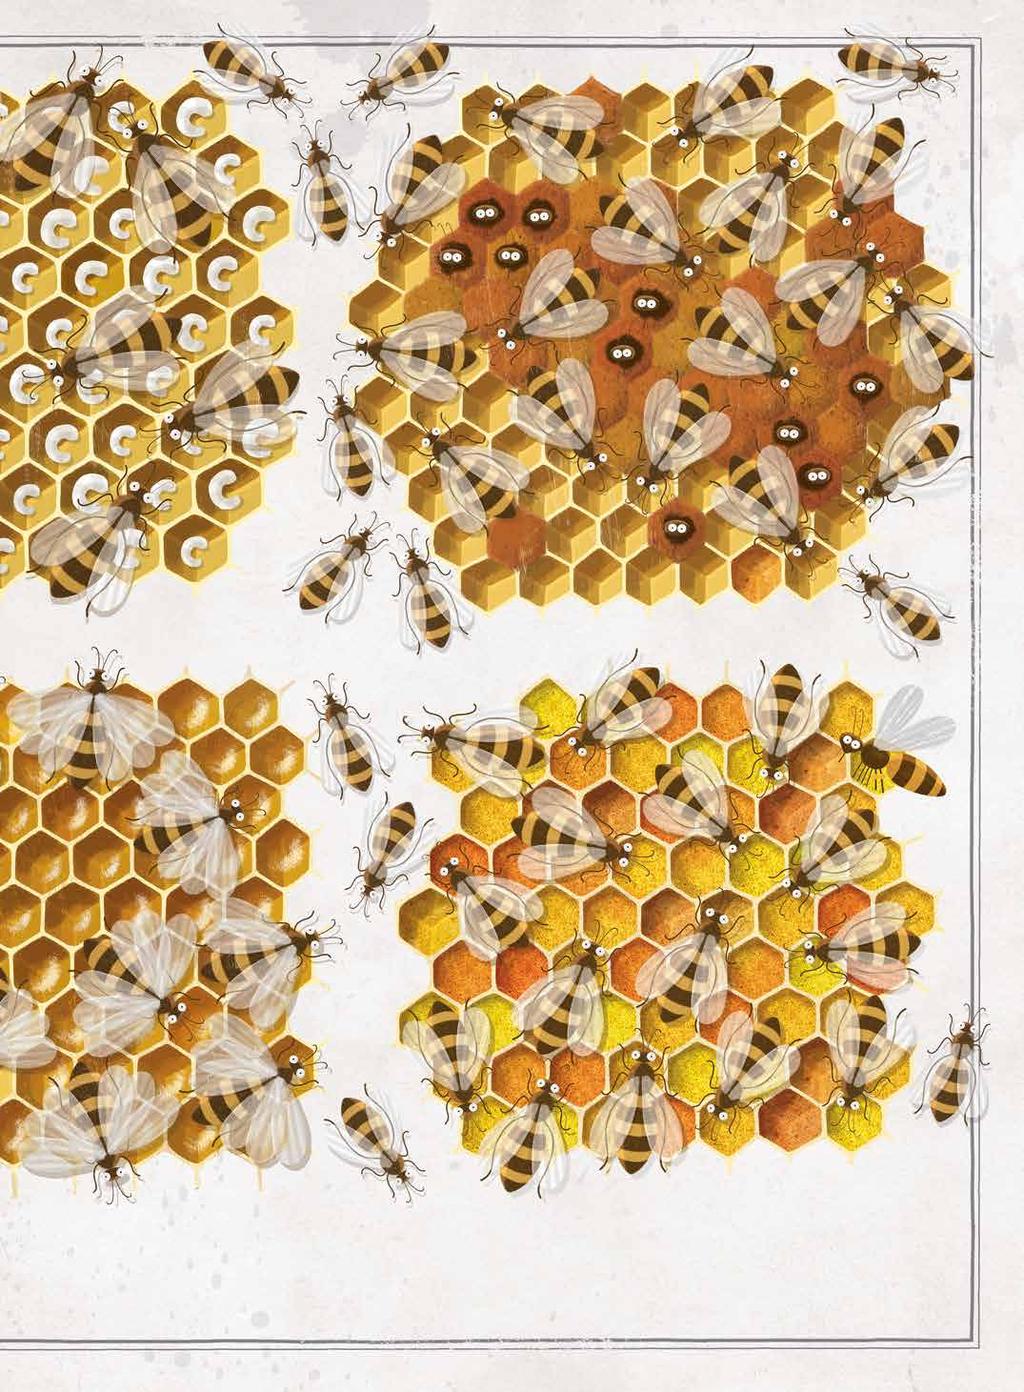 A dolgozók etetik az álcákat. A fiatal méh kirágja magát a sejtből. A méhek mézet készítenek. A méhek virágport raktároznak el a lépsejtekben. építése vagy a kaptárbejáró őrzése.